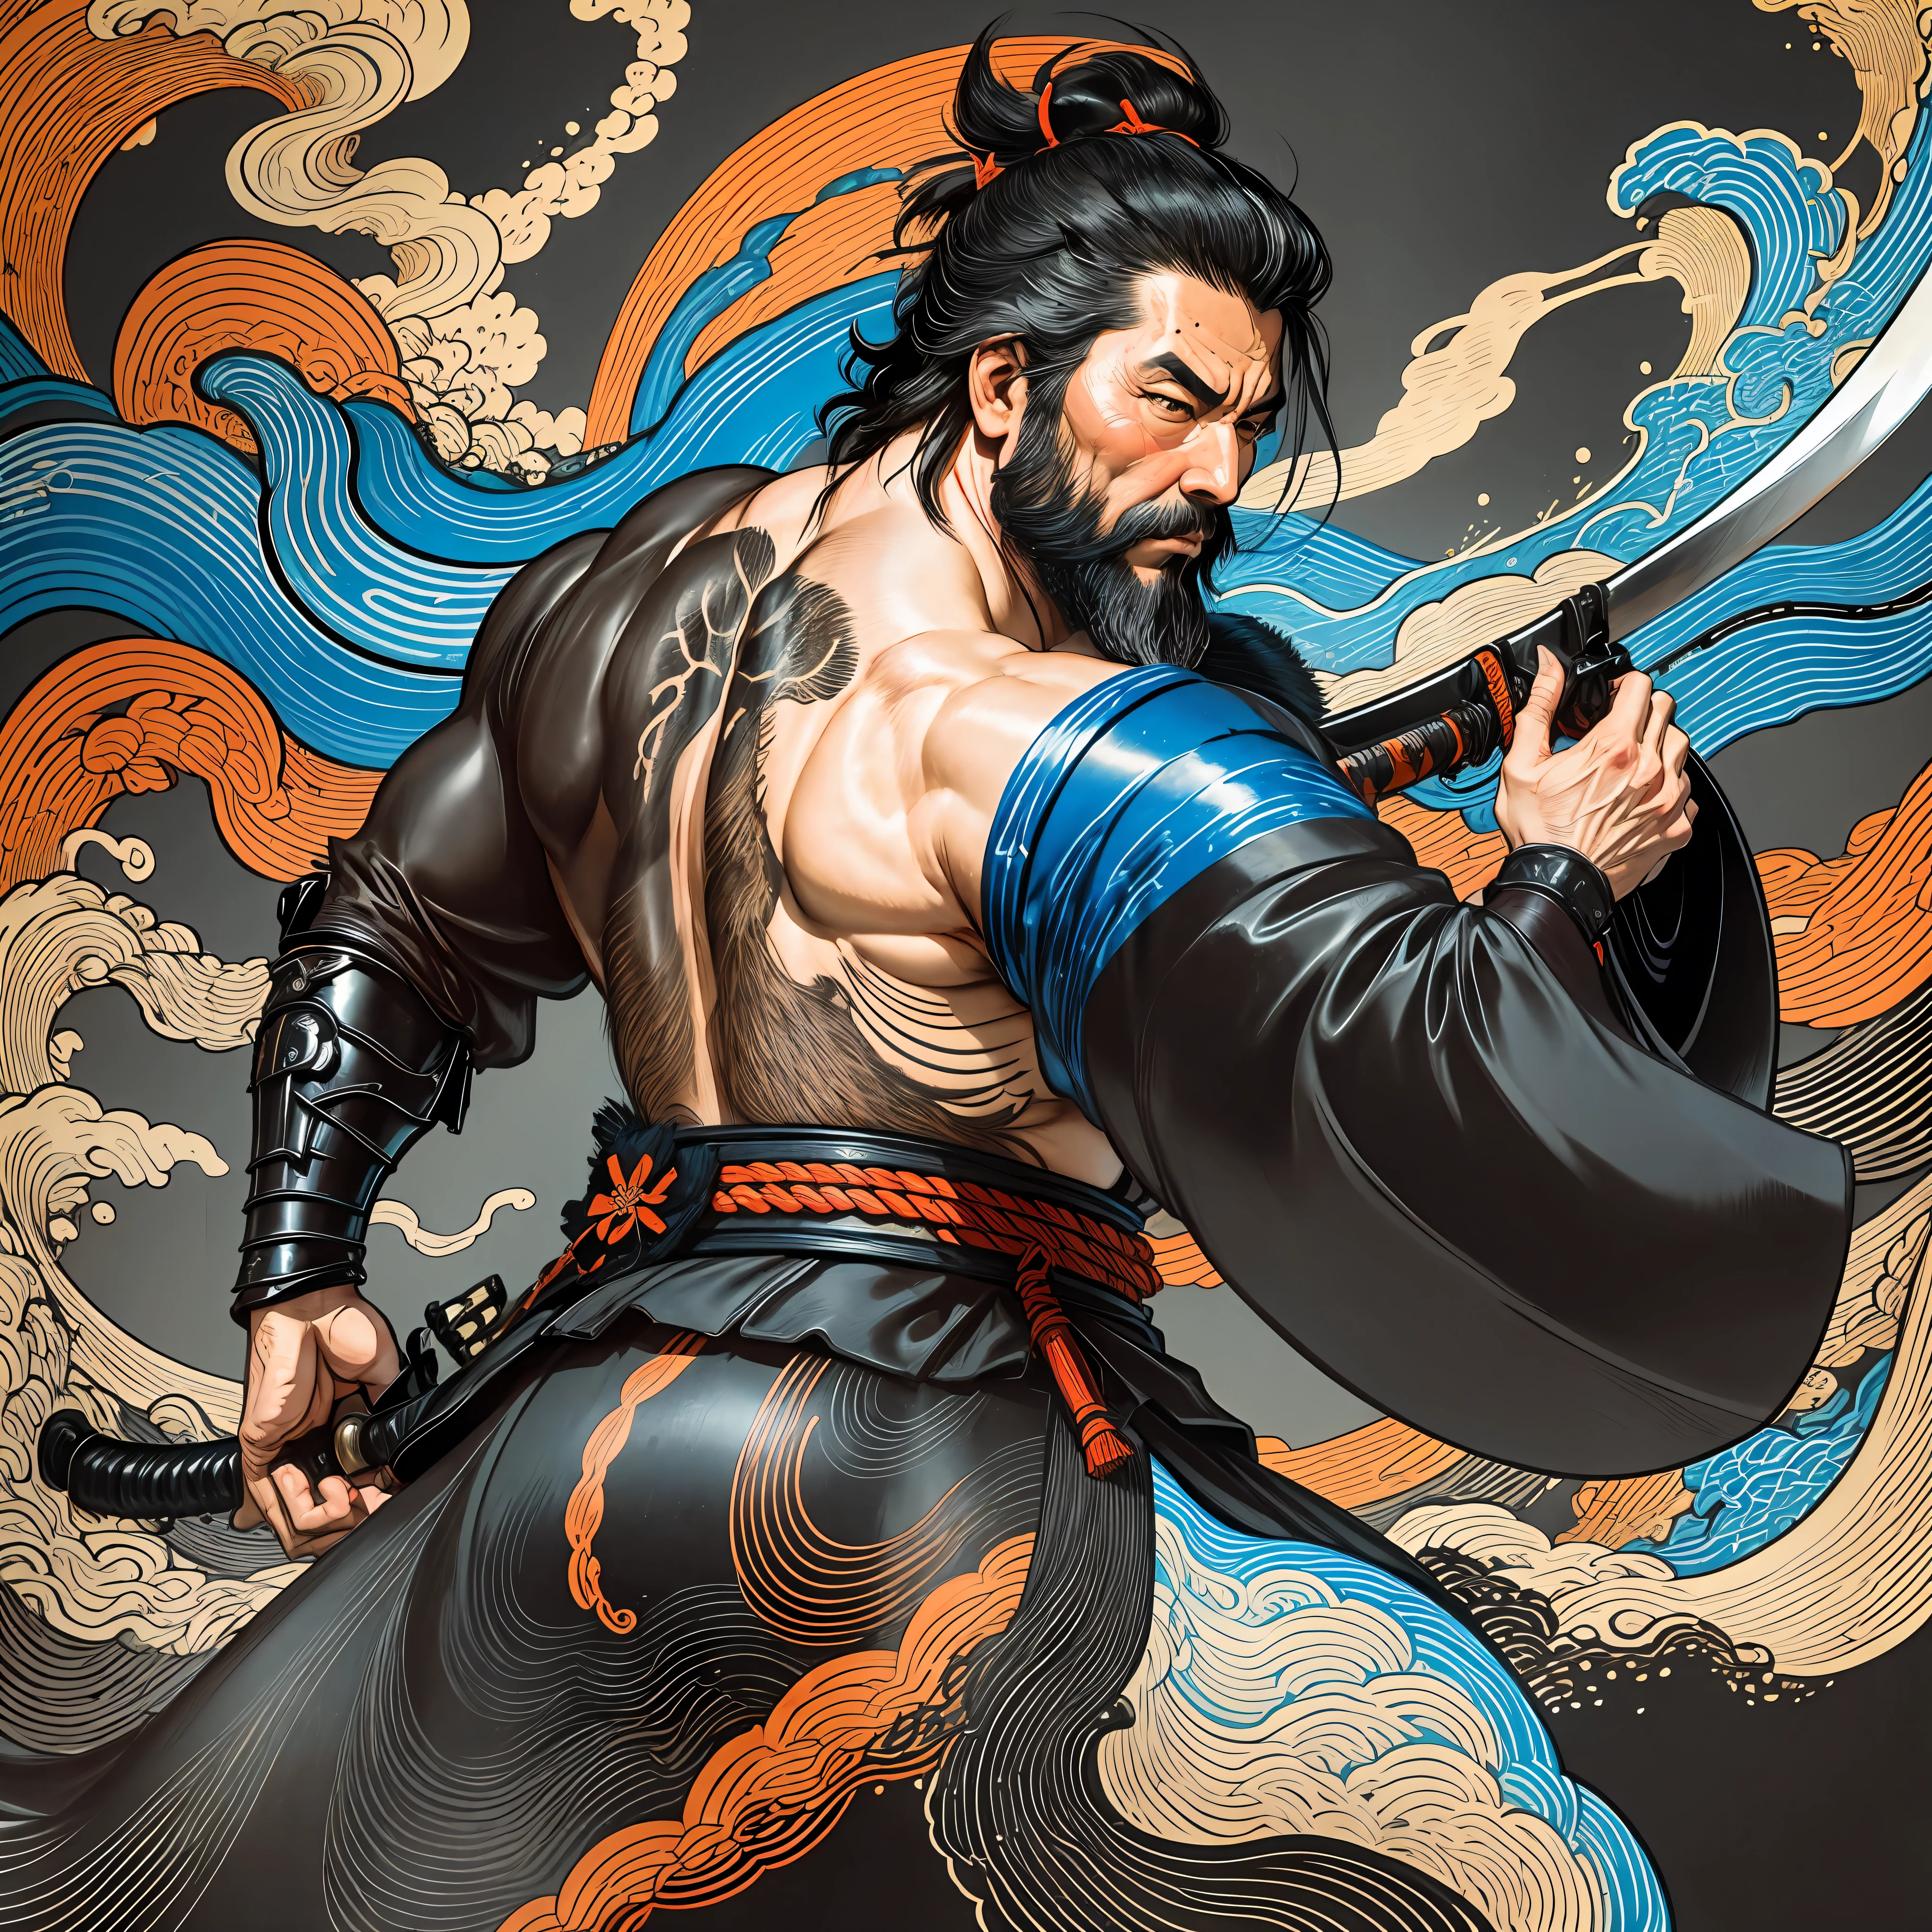 Il s&#39;agit d&#39;une peinture corporelle complète aux couleurs naturelles avec des dessins au trait de style Katsushika Hokusai.. L&#39;épéiste Miyamoto Musashi a un grand corps comme un homme fort. Samouraï du Japon. Il a une expression de détermination digne mais virile, Les cheveux cours et noirs, et un court, barbe taillée. Le haut de son corps est recouvert d&#39;un kimono noir et son hakama arrive jusqu&#39;aux genoux.. Dans sa main droite, il tient une épée japonaise avec une partie d&#39;épée plus longue.. Dans la plus haute qualité, dans les éclairs et les flammes tourbillonnantes de style ukiyo-e haute résolution du chef-d&#39;œuvre. Miyamoto Musashi se tient debout, le visage et le corps tournés vers l&#39;avant., il a le dos droit.